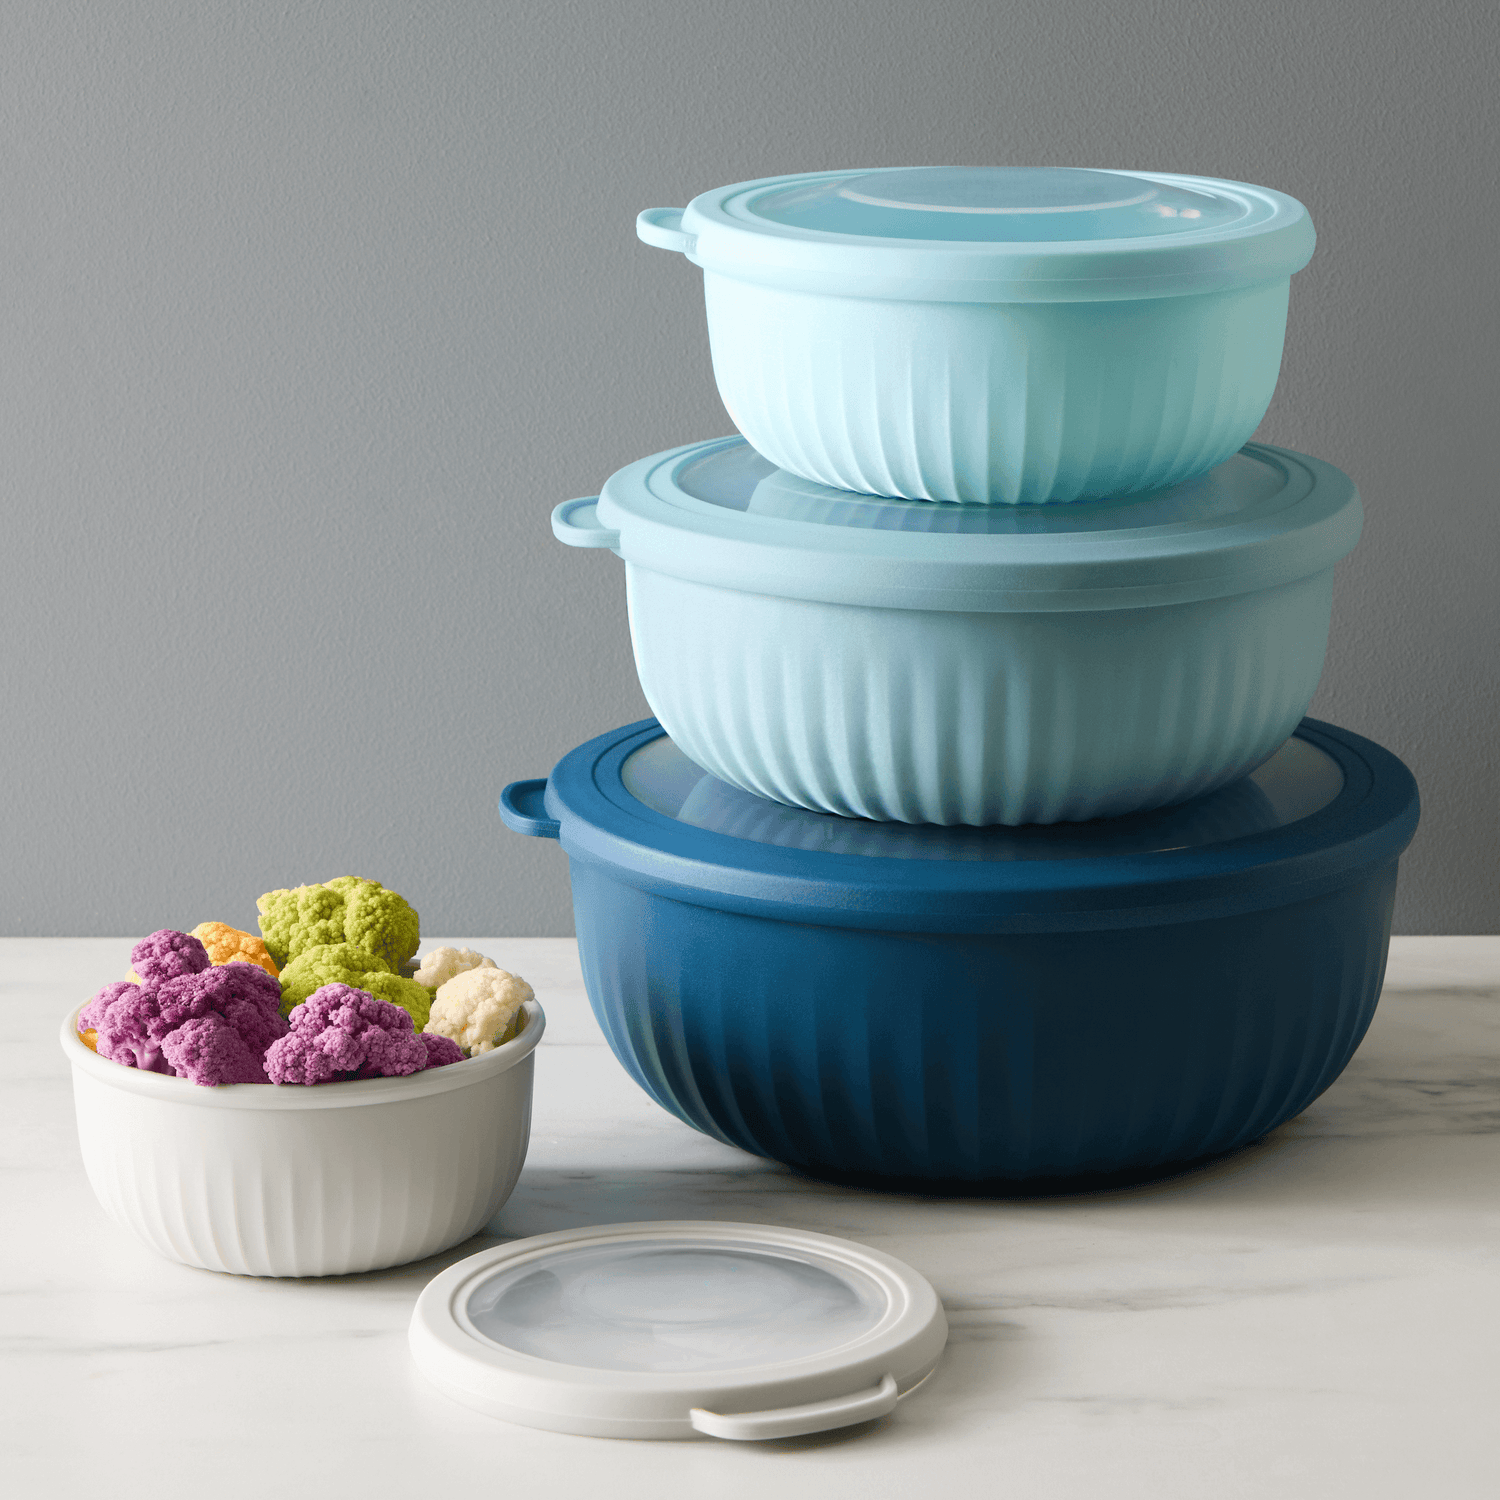 Cook with Color Plastic Prep Bowls - Mini Bowls with Lids, 8 Piece Nesting Bowls Set Includes 4 Prep Bowls and 4 Lids (Ombre Blue)